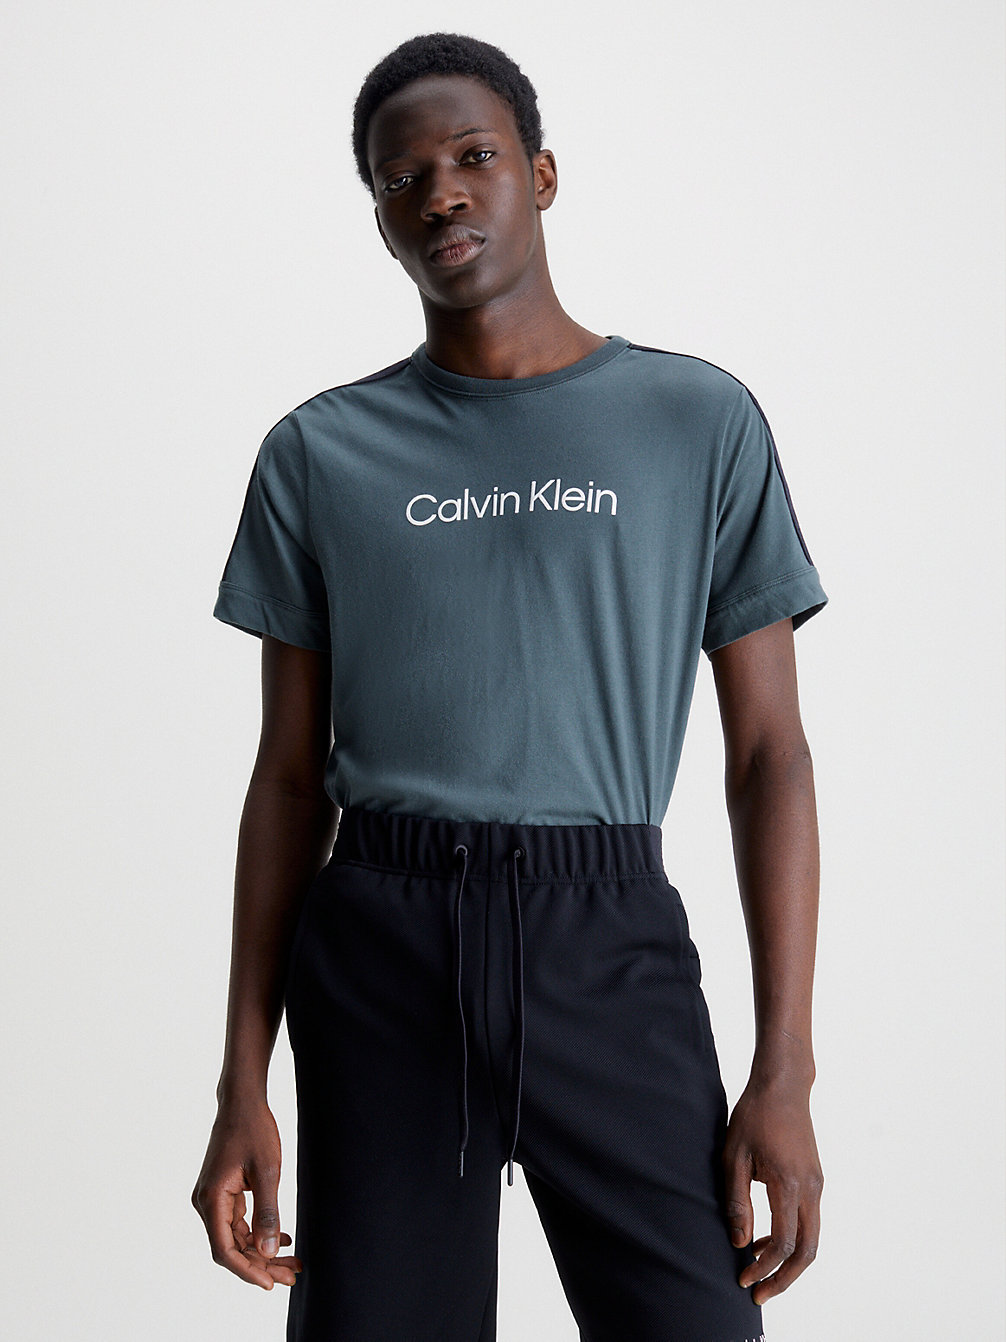 URBAN CHIC > Zacht Sport T-Shirt > undefined heren - Calvin Klein